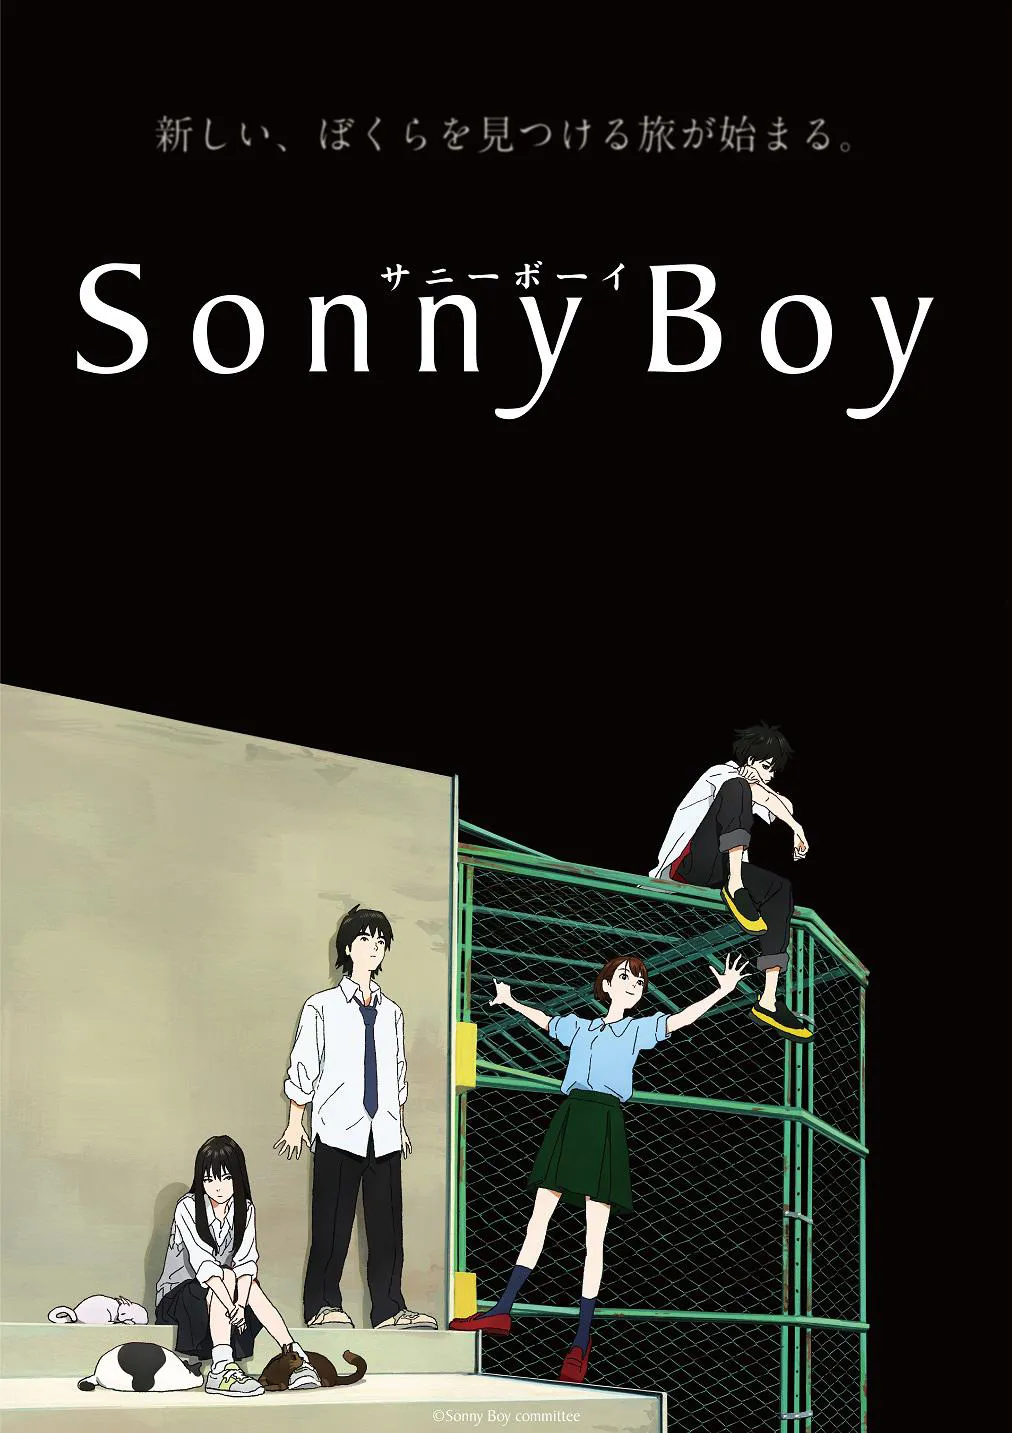 7月15日スタート「Sonny Boy」